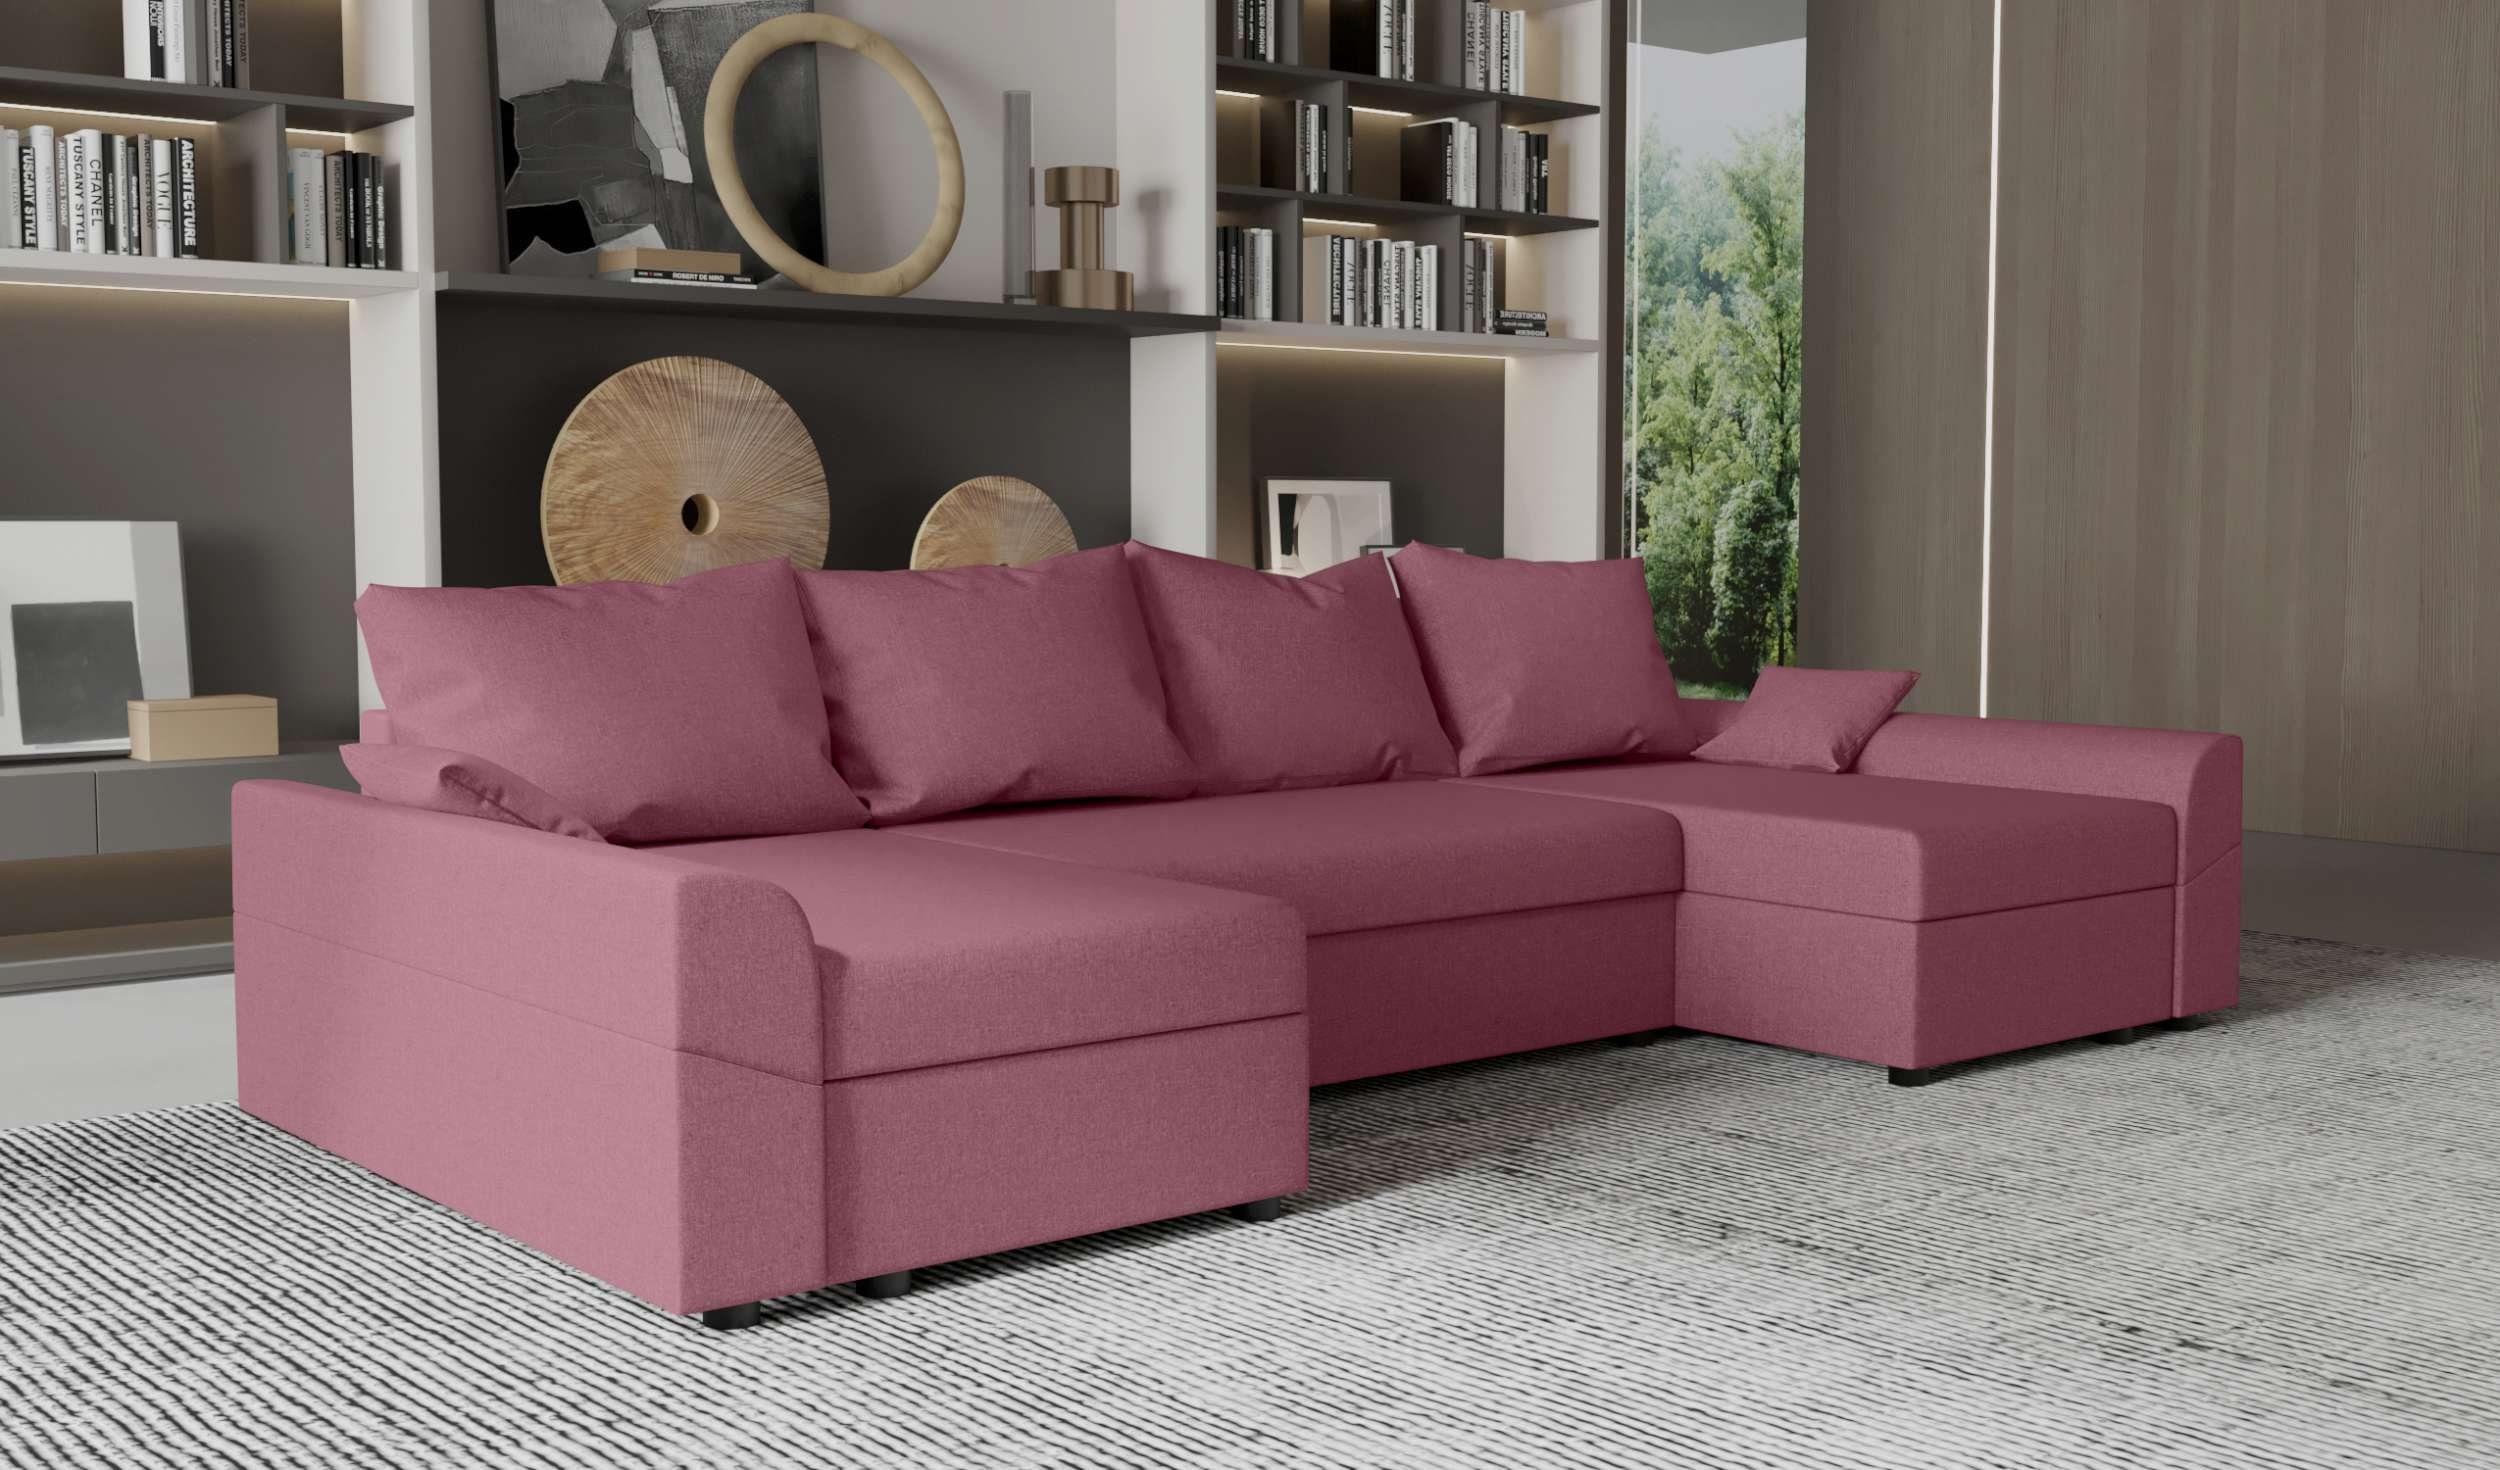 Stylefy Carolina, Bettfunktion, Eckcouch, U-Form, Wohnlandschaft mit Sitzkomfort, mit Bettkasten, Sofa, Design Modern